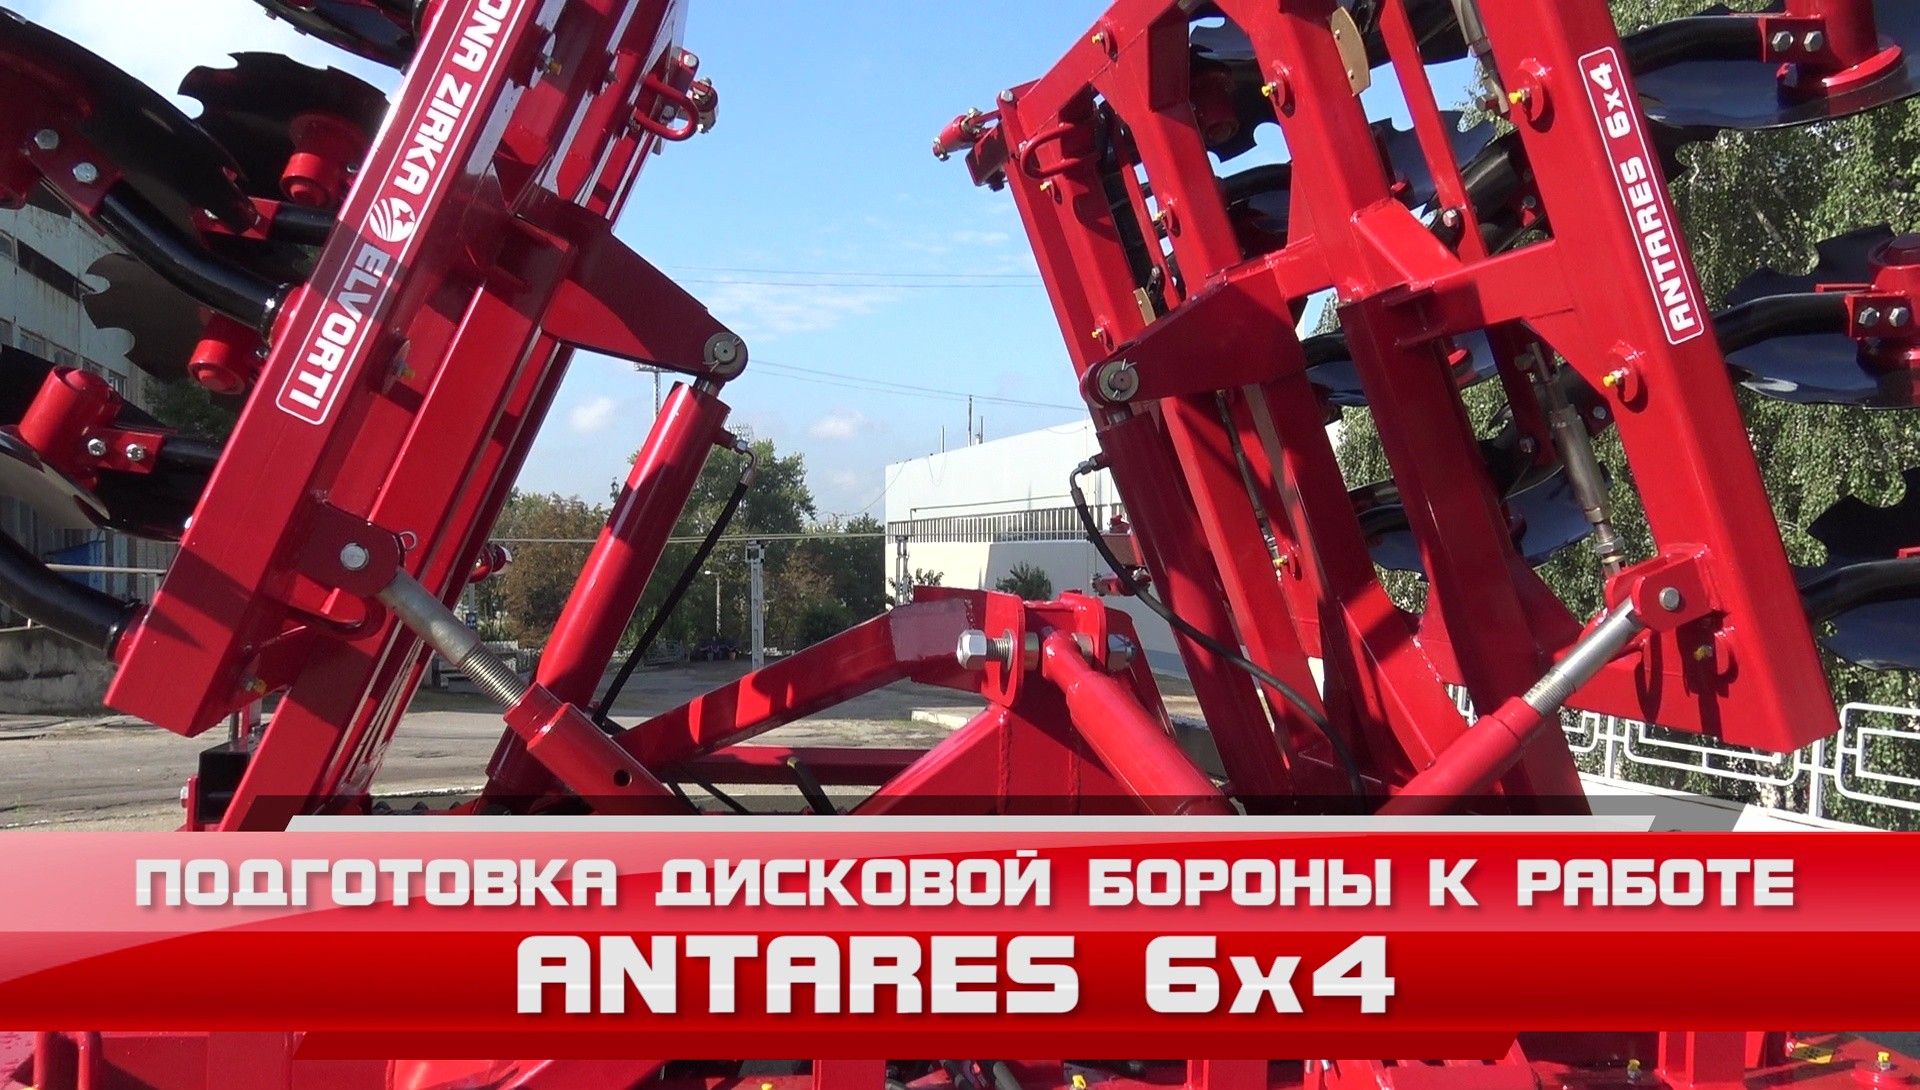 Antares 6x4 - Основні настройки і підготовка до роботи